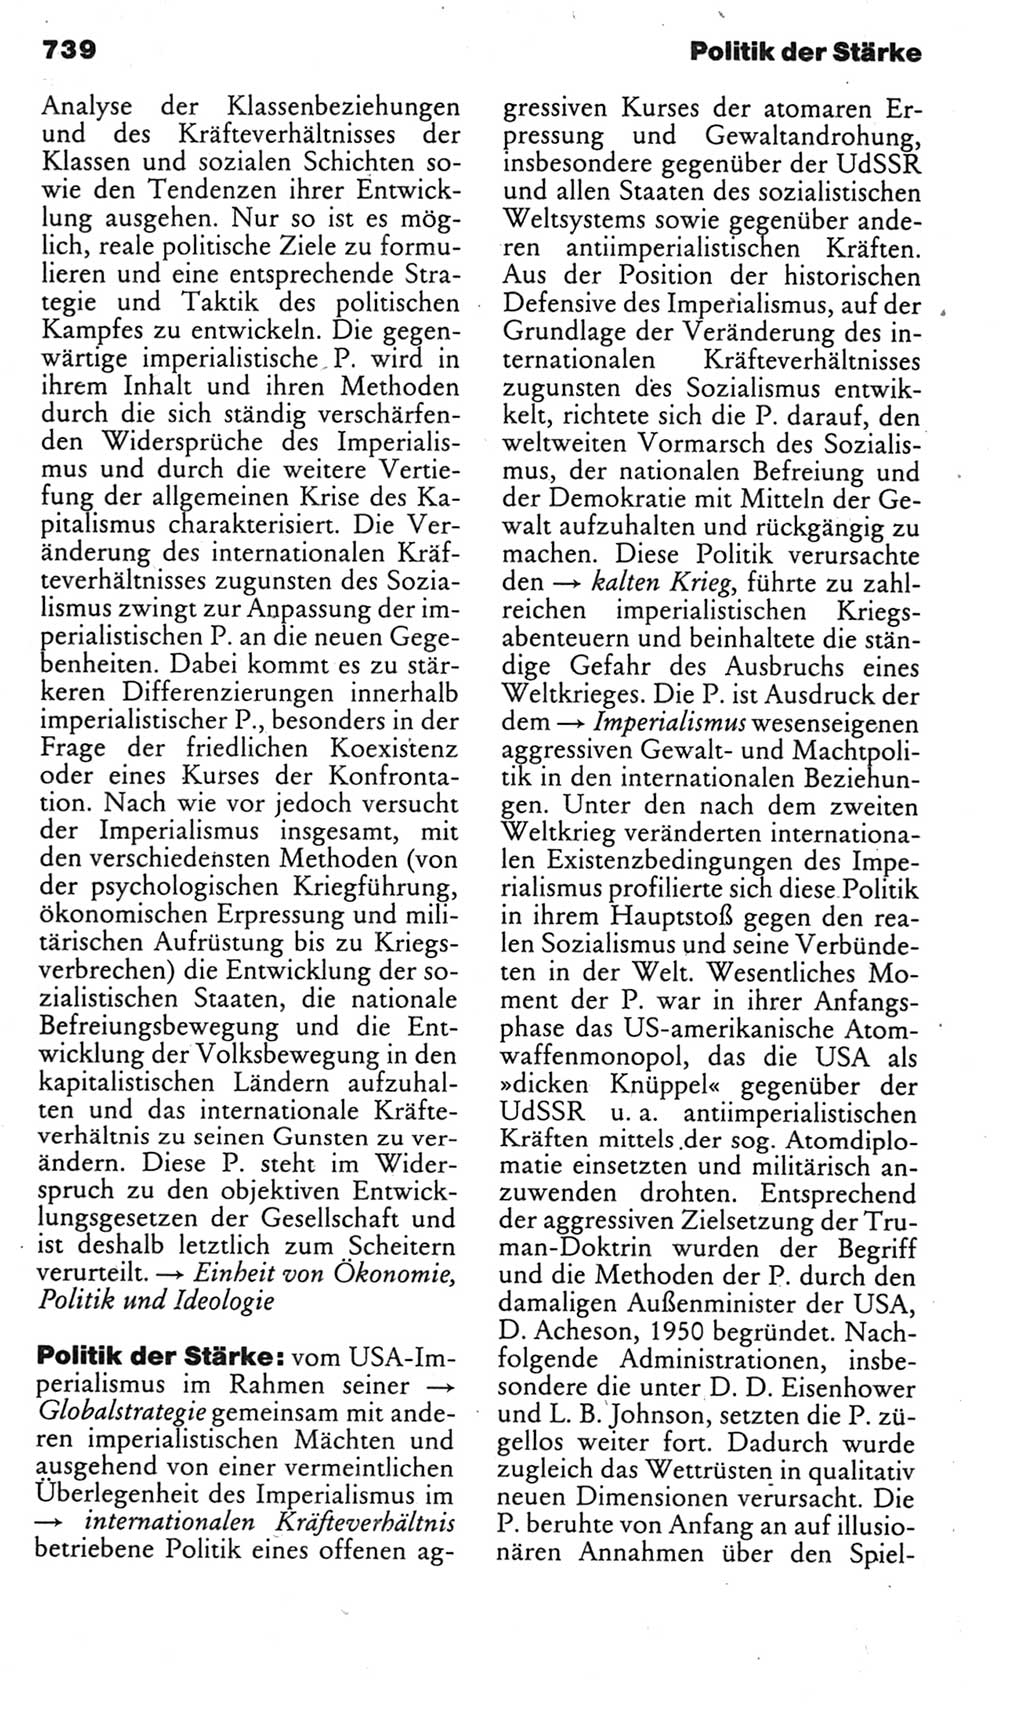 Kleines politisches Wörterbuch [Deutsche Demokratische Republik (DDR)] 1985, Seite 739 (Kl. pol. Wb. DDR 1985, S. 739)